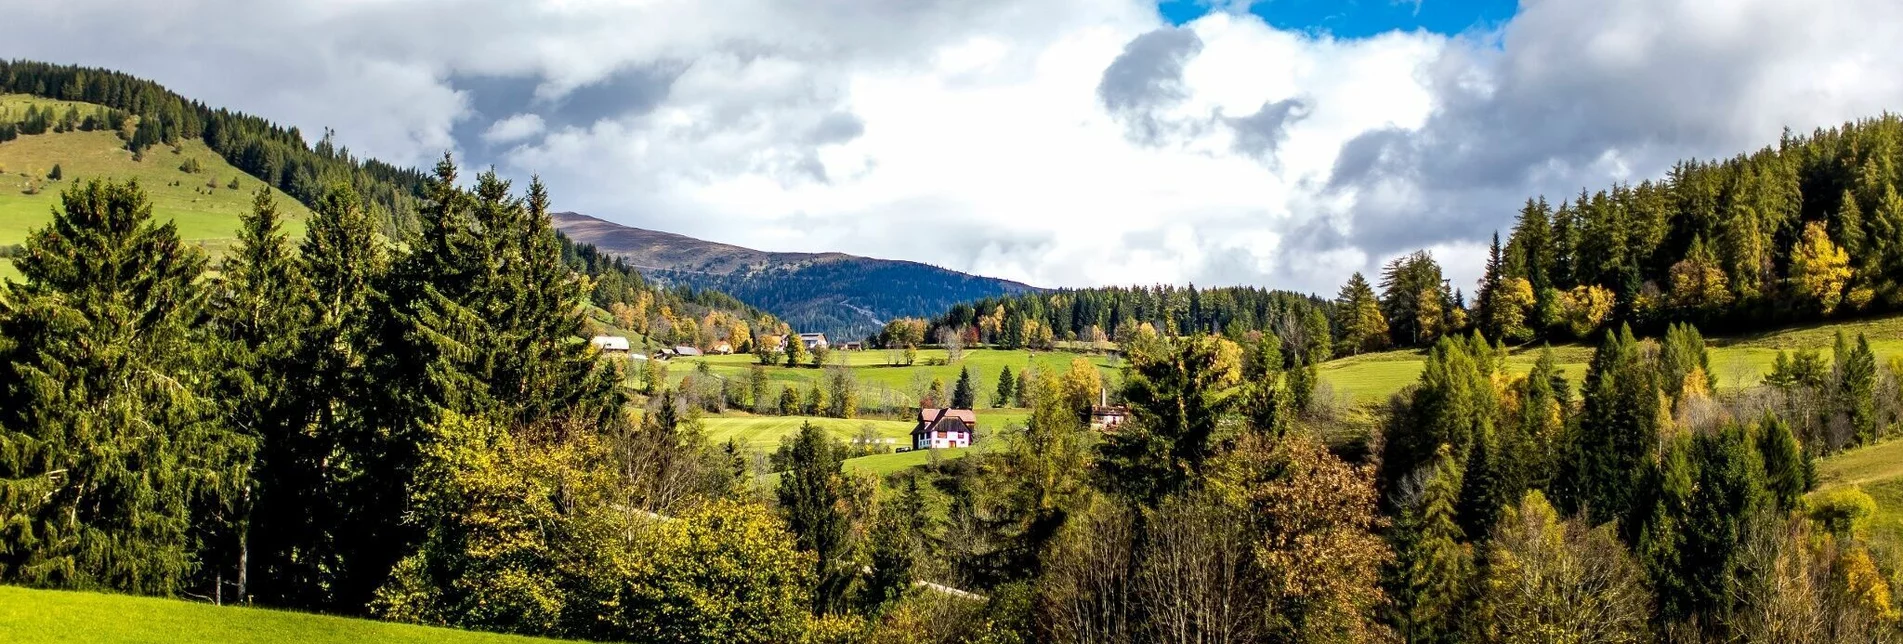 Wanderung Pöllauer Runde - Touren-Impression #1 | © Tourismusverband Region Murau